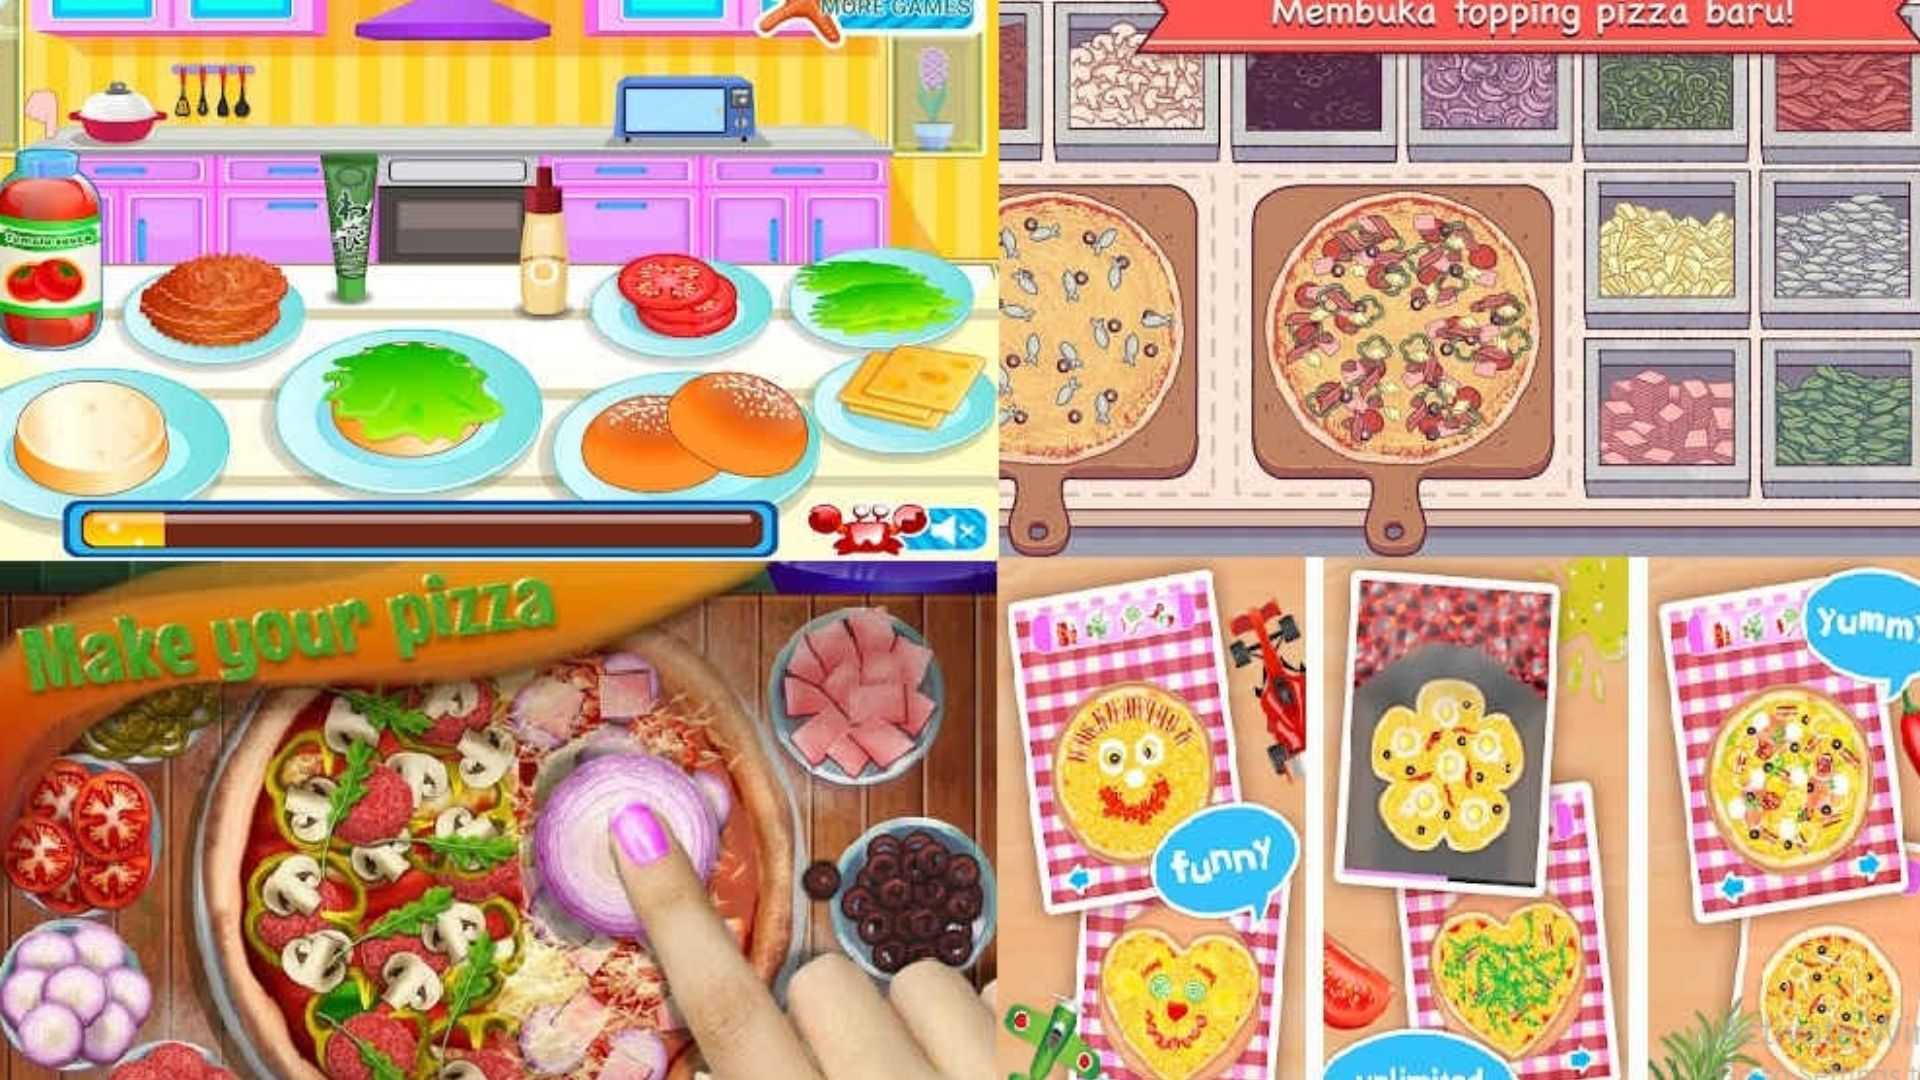 7 Rekomendasi Game Online Memasak Pizza